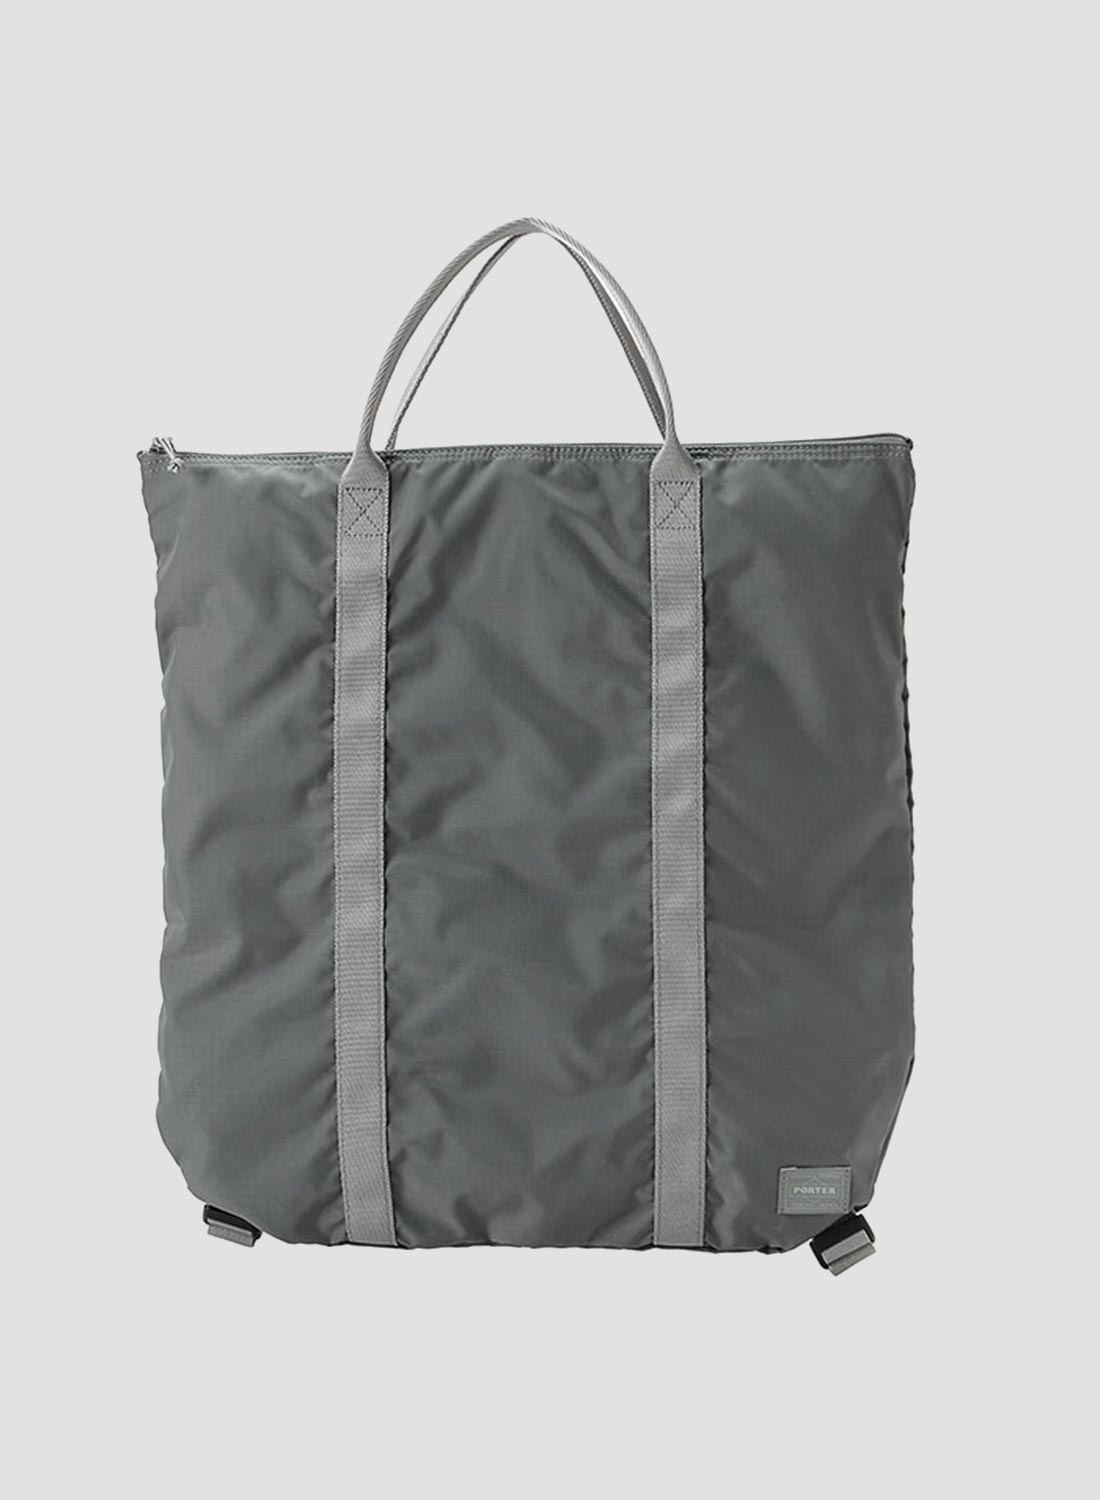 Porter-Yoshida & Co Flex 2-Way Tote Bag in Grey - 1